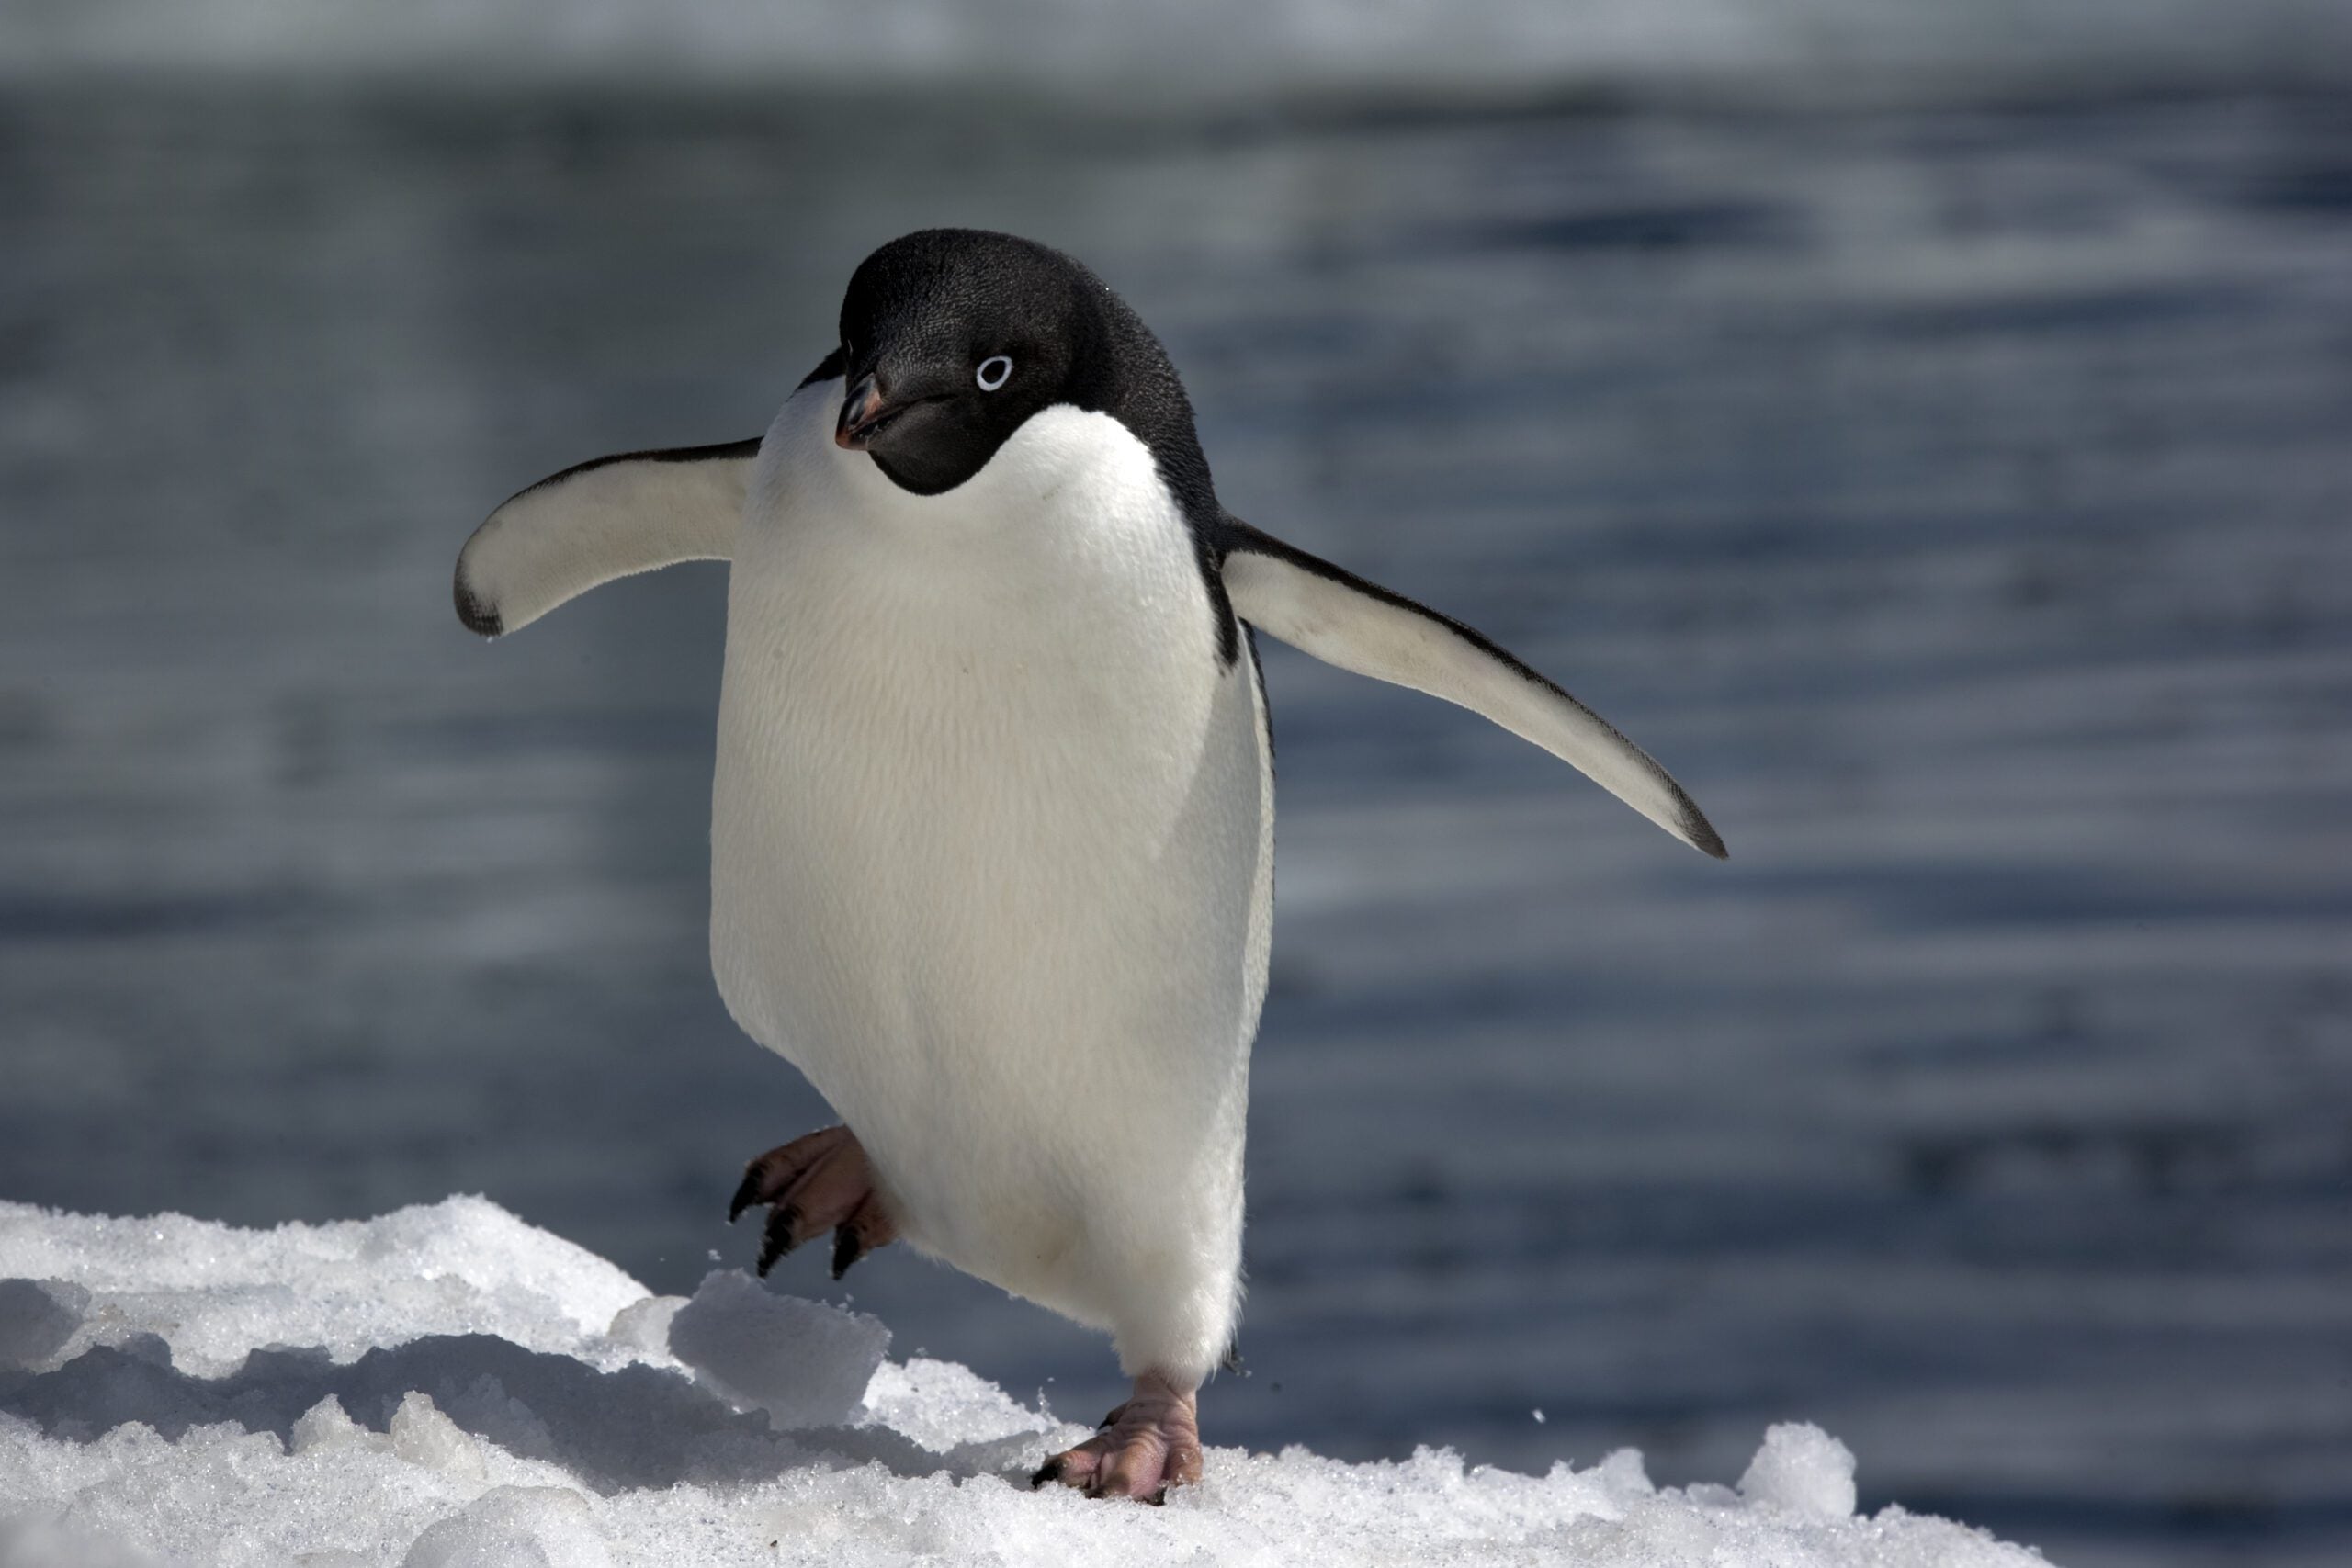 penguins enemies